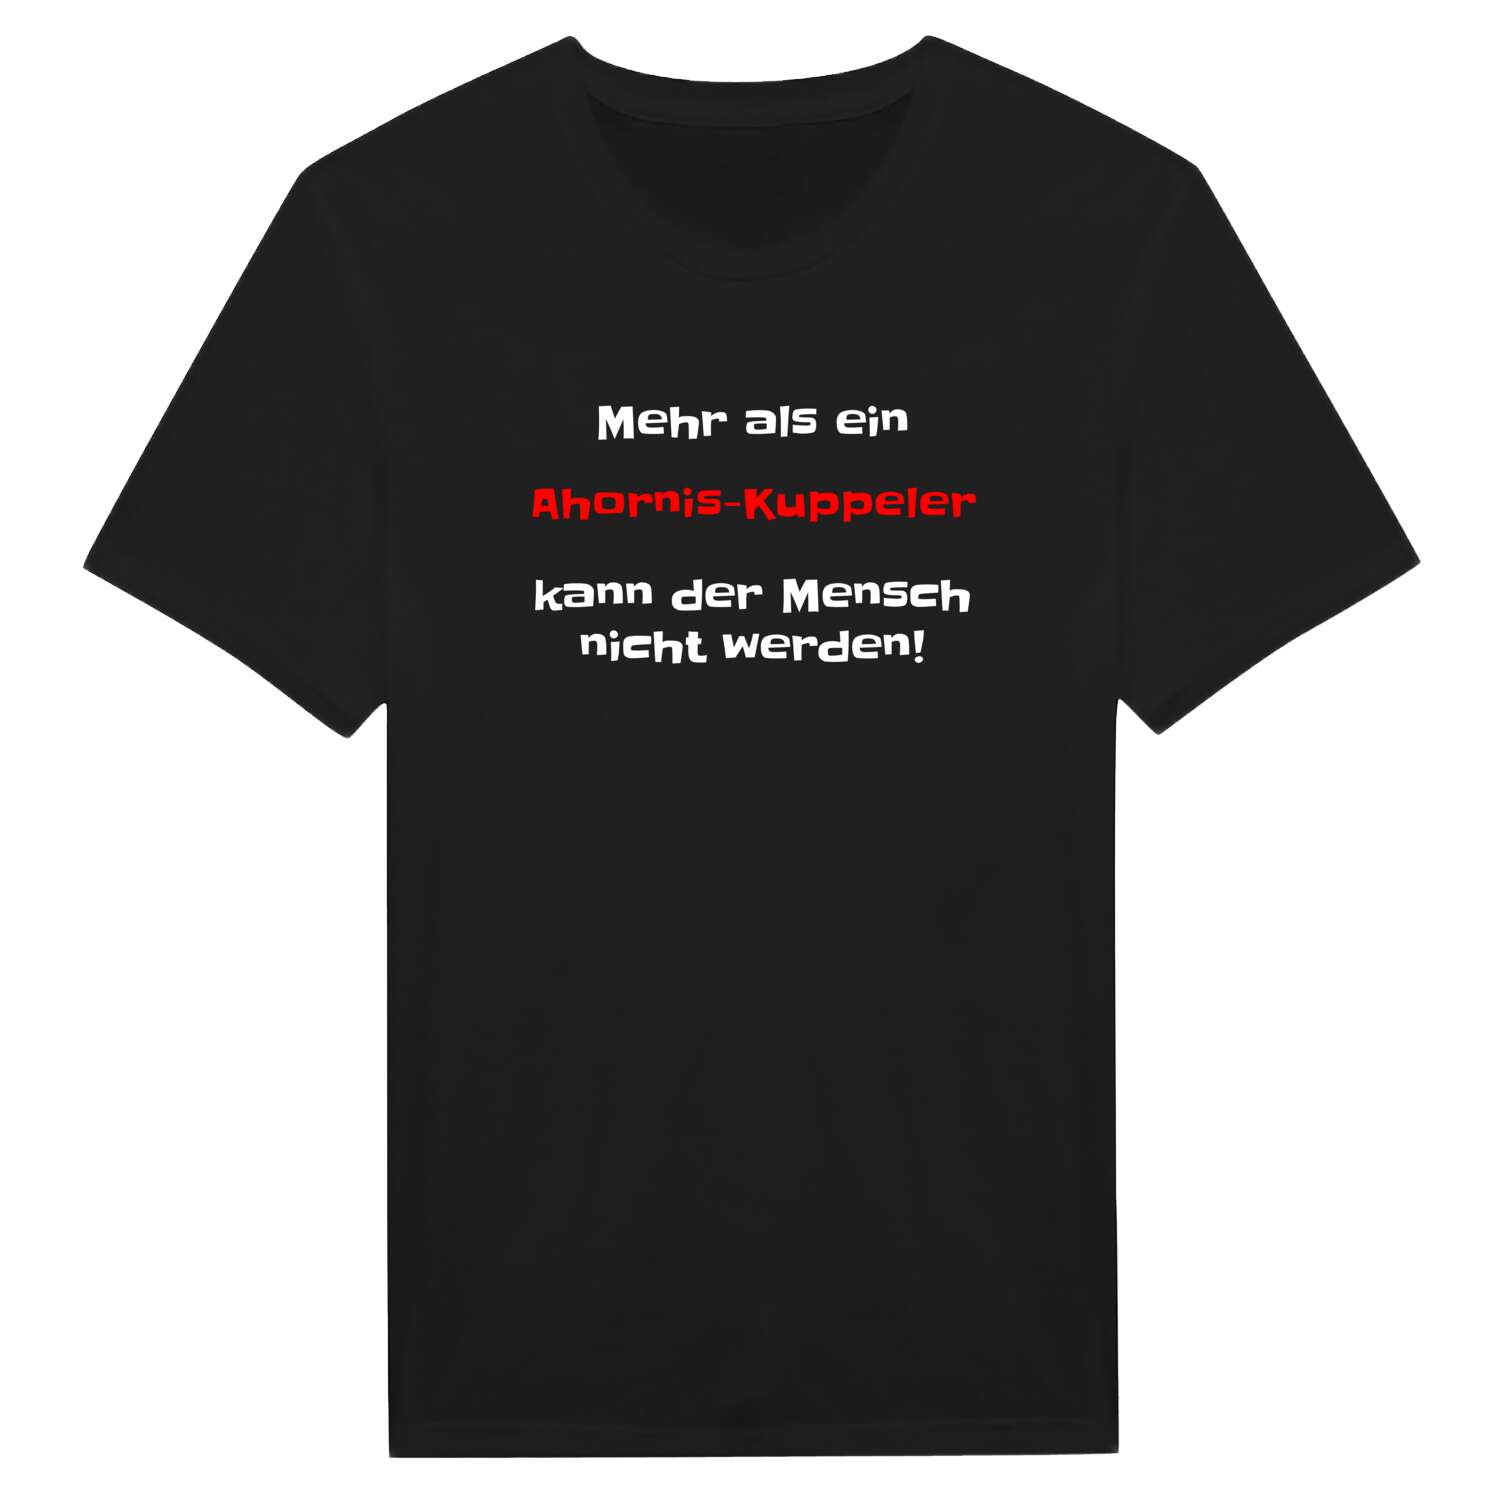 Ahornis-Kuppel T-Shirt »Mehr als ein«